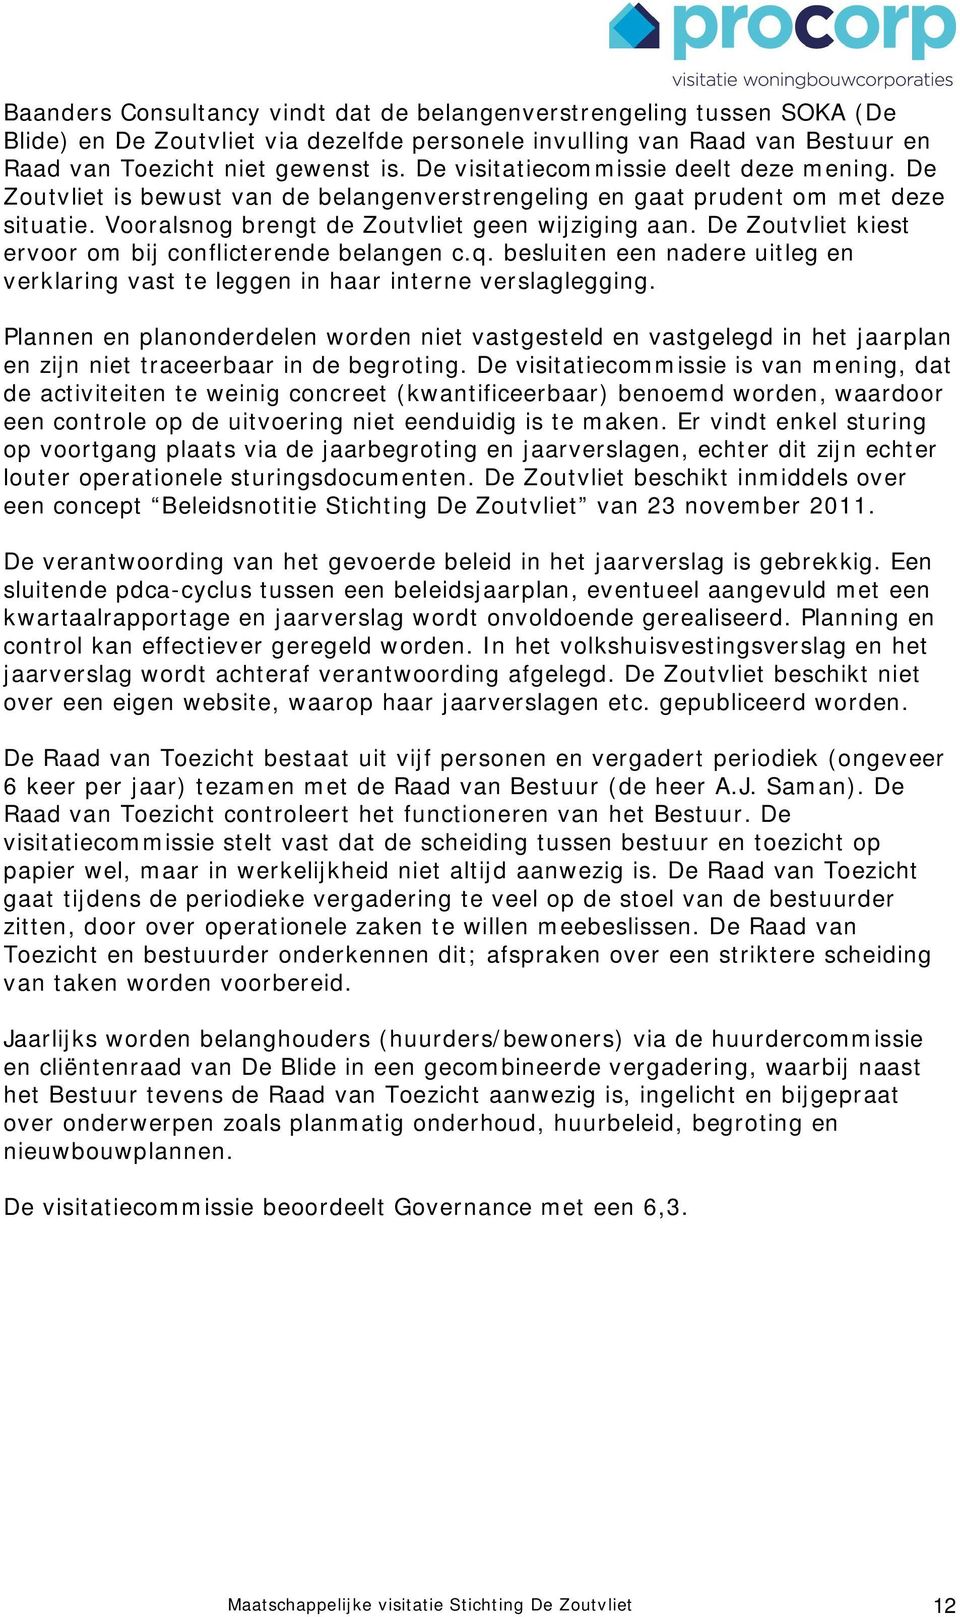 De Zoutvliet kiest ervoor om bij conflicterende belangen c.q. besluiten een nadere uitleg en verklaring vast te leggen in haar interne verslaglegging.